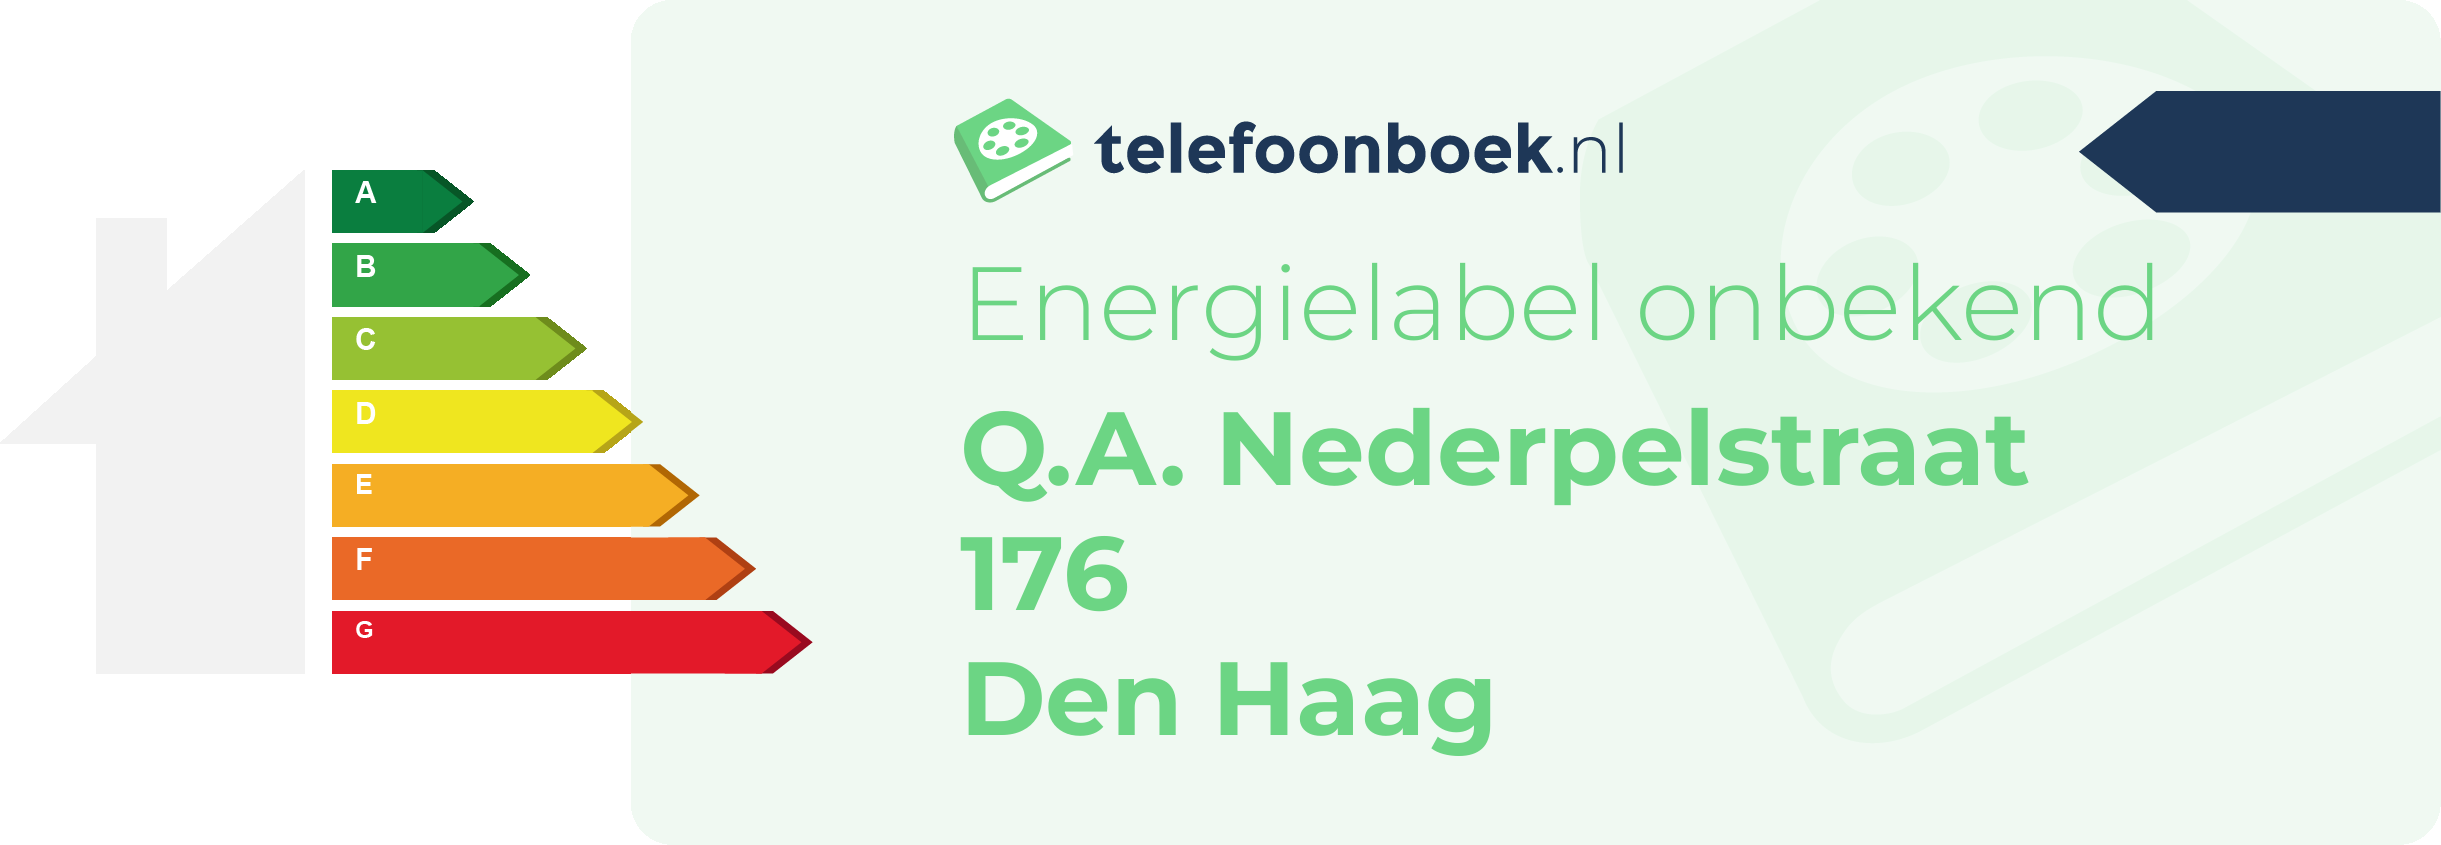 Energielabel Q.A. Nederpelstraat 176 Den Haag